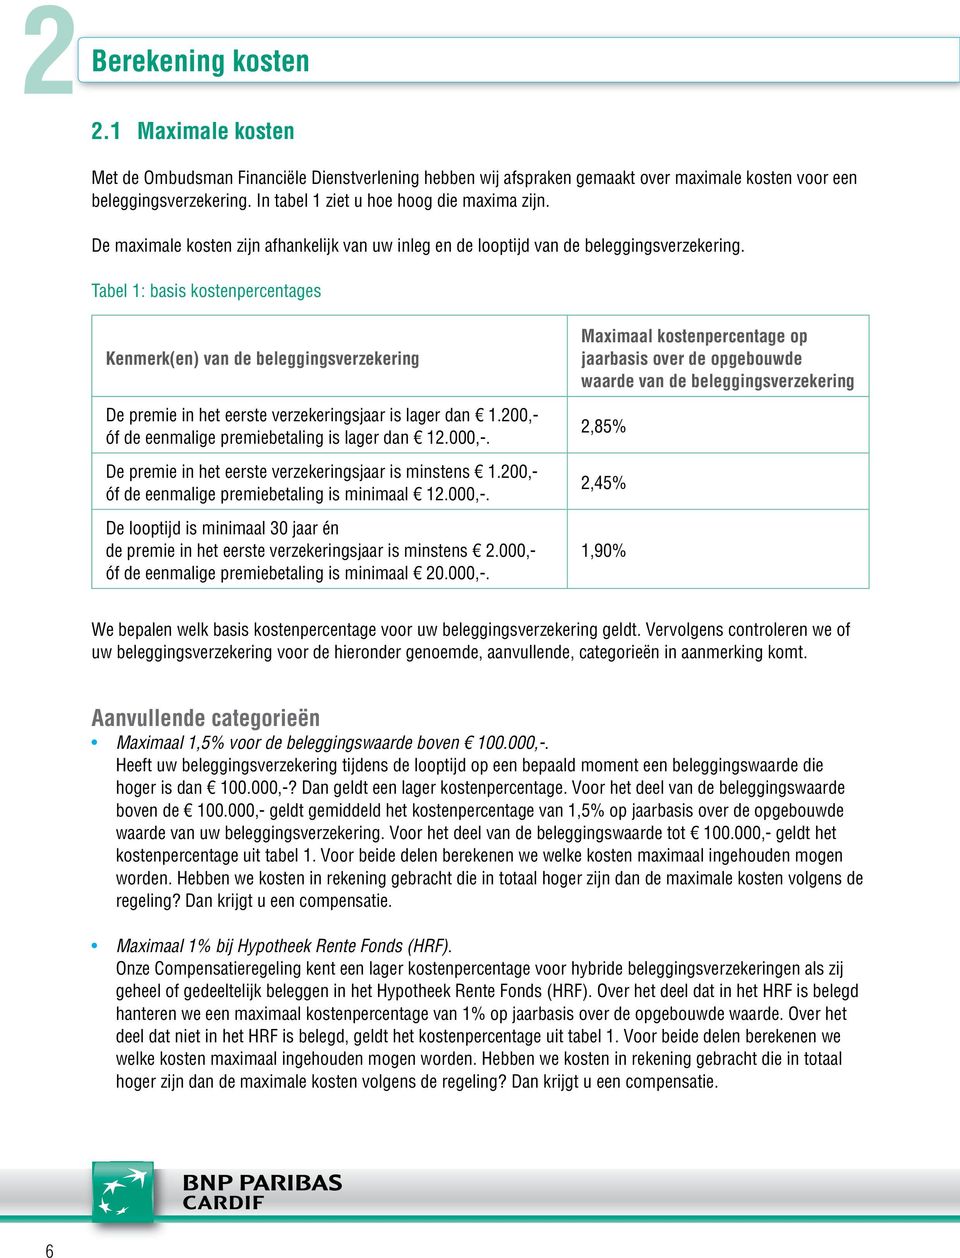 Tabel 1: basis kostenpercentages Kenmerk(en) van de beleggingsverzekering De premie in het eerste verzekeringsjaar is lager dan 1.200,- óf de eenmalige premiebetaling is lager dan 12.000,-.